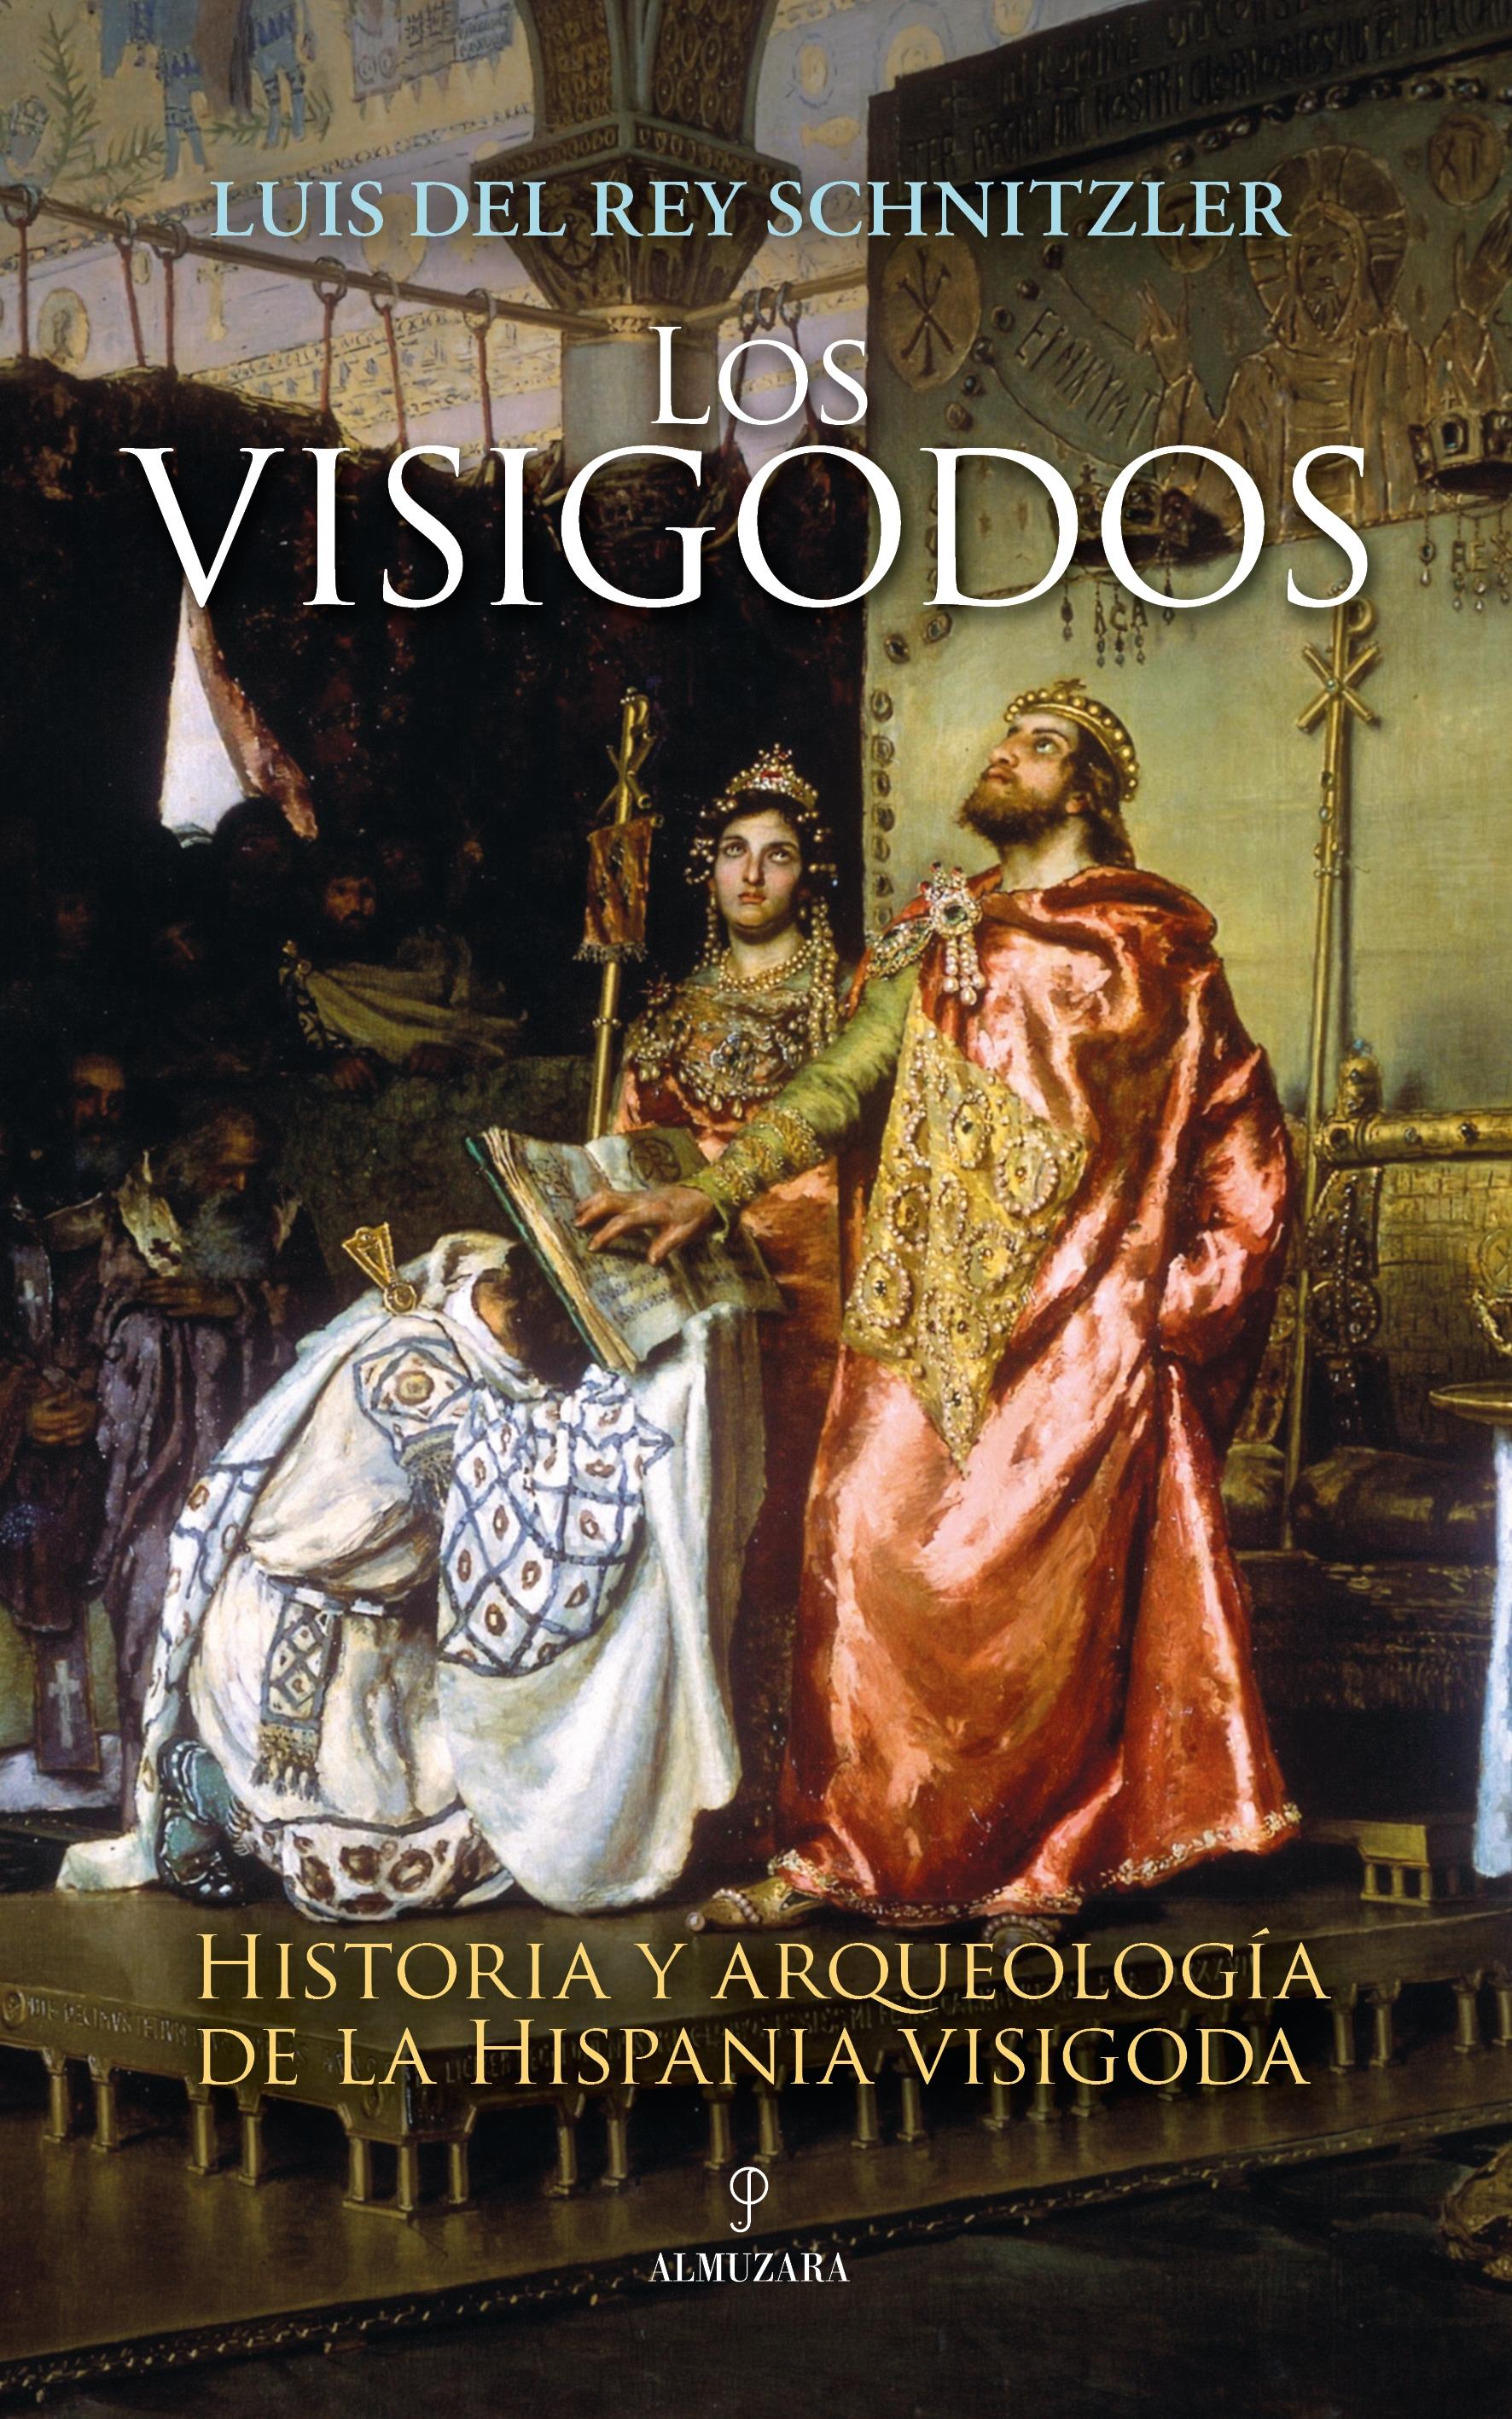 Visigodos, Los "Historia y arqueología de la Hispania visigoda"